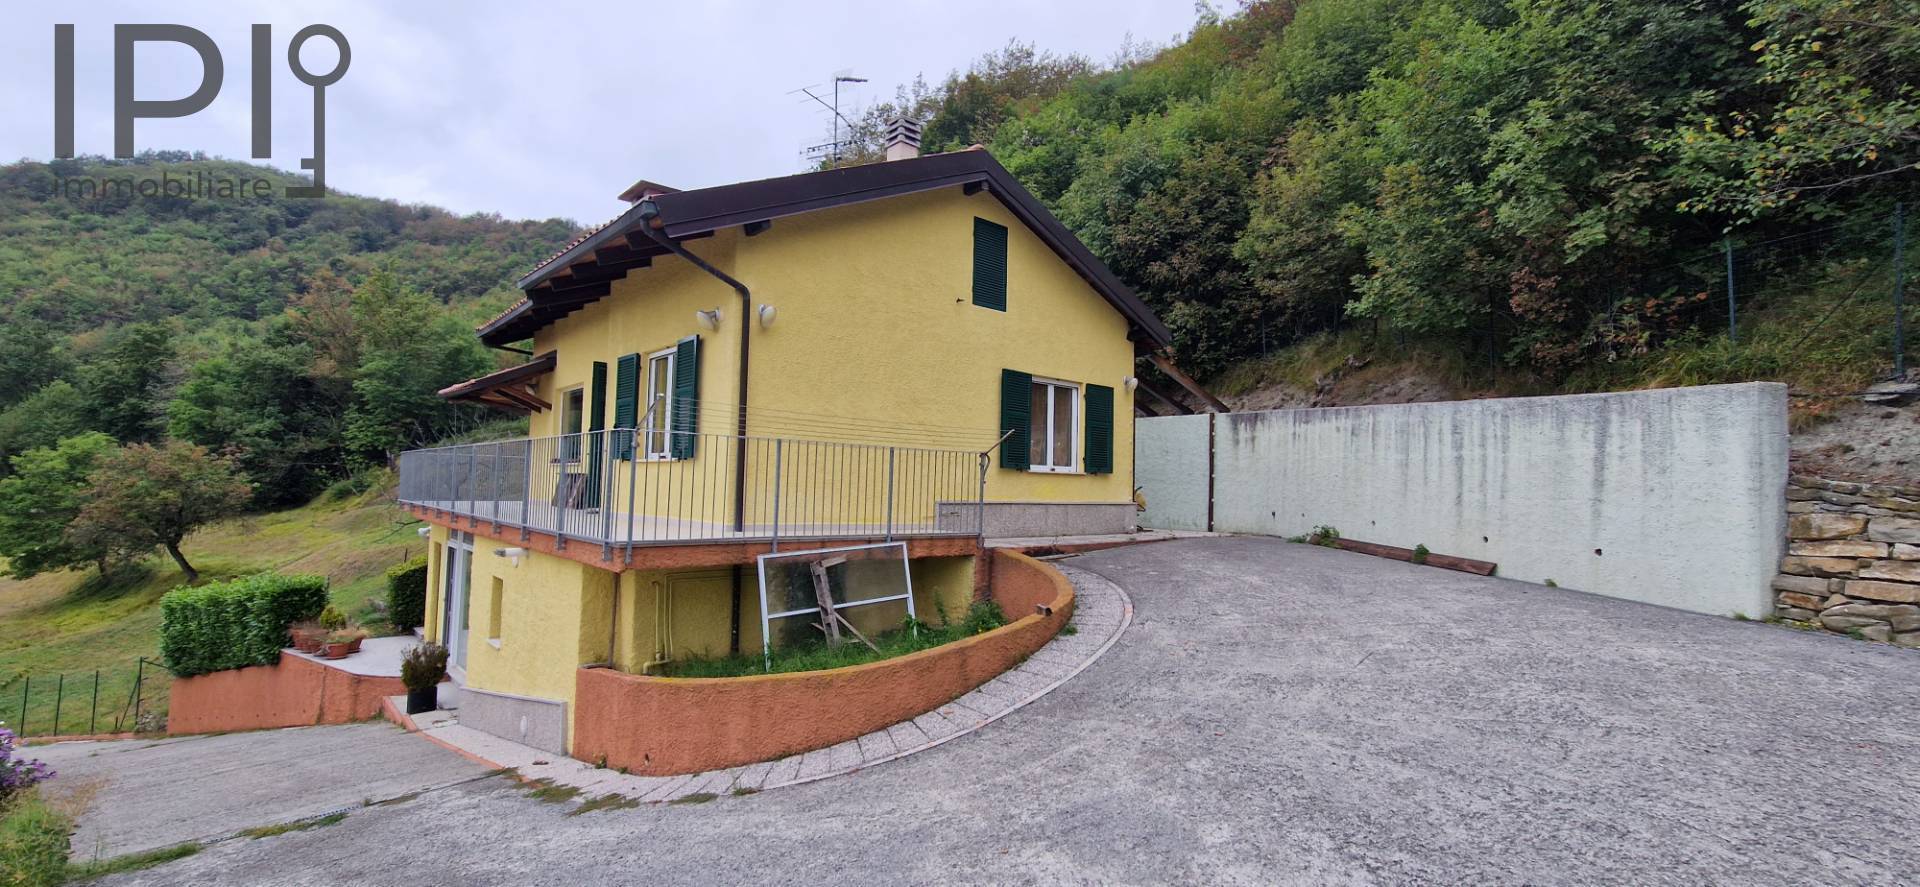 Villa in vendita a Plodio, 5 locali, zona Località: PlodioAlto, prezzo € 199.000 | PortaleAgenzieImmobiliari.it